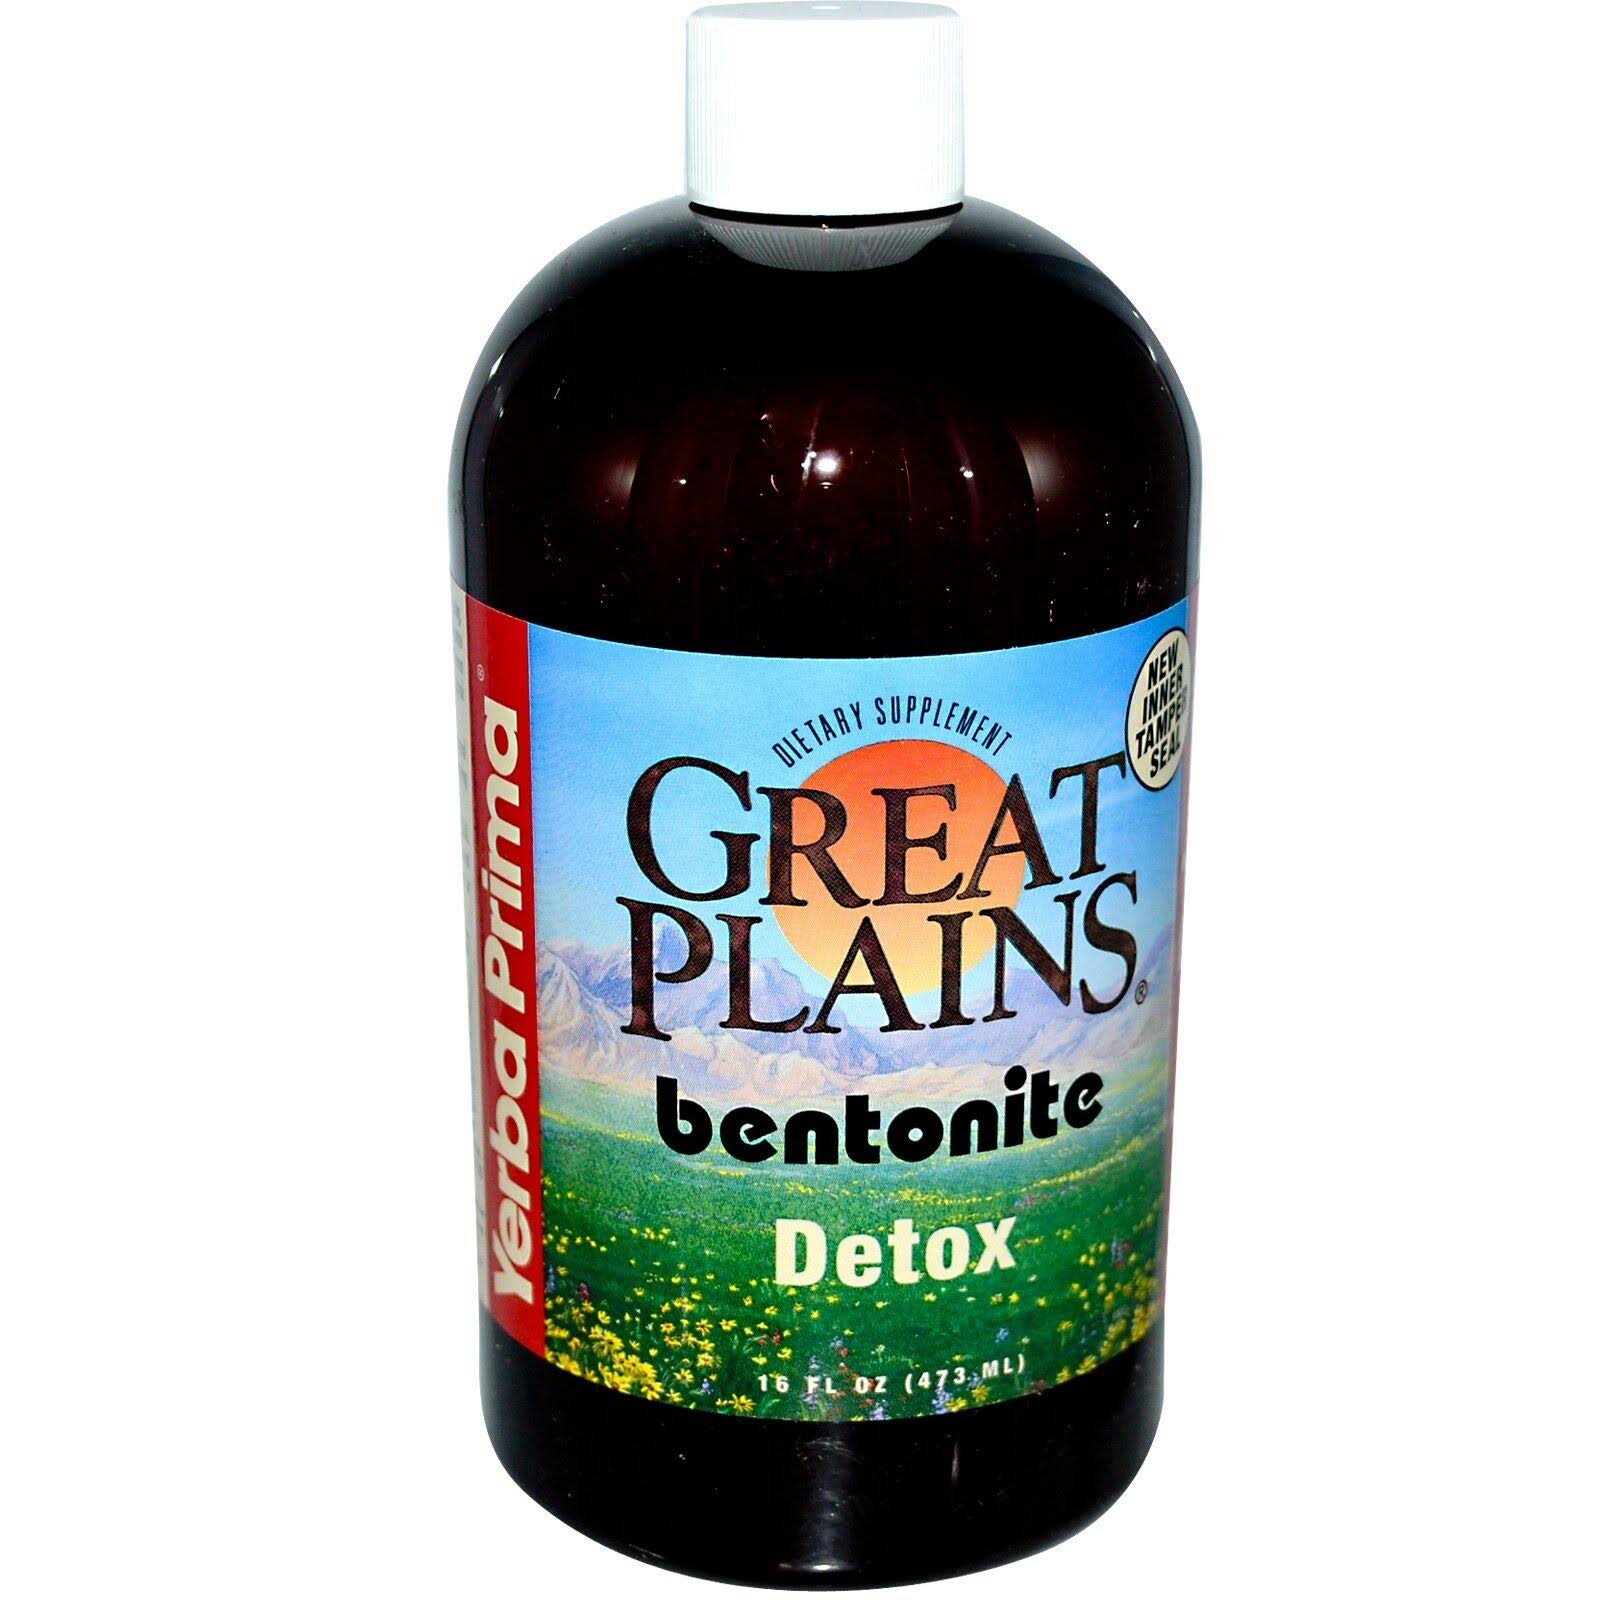 Great Plains Bentonite Detox